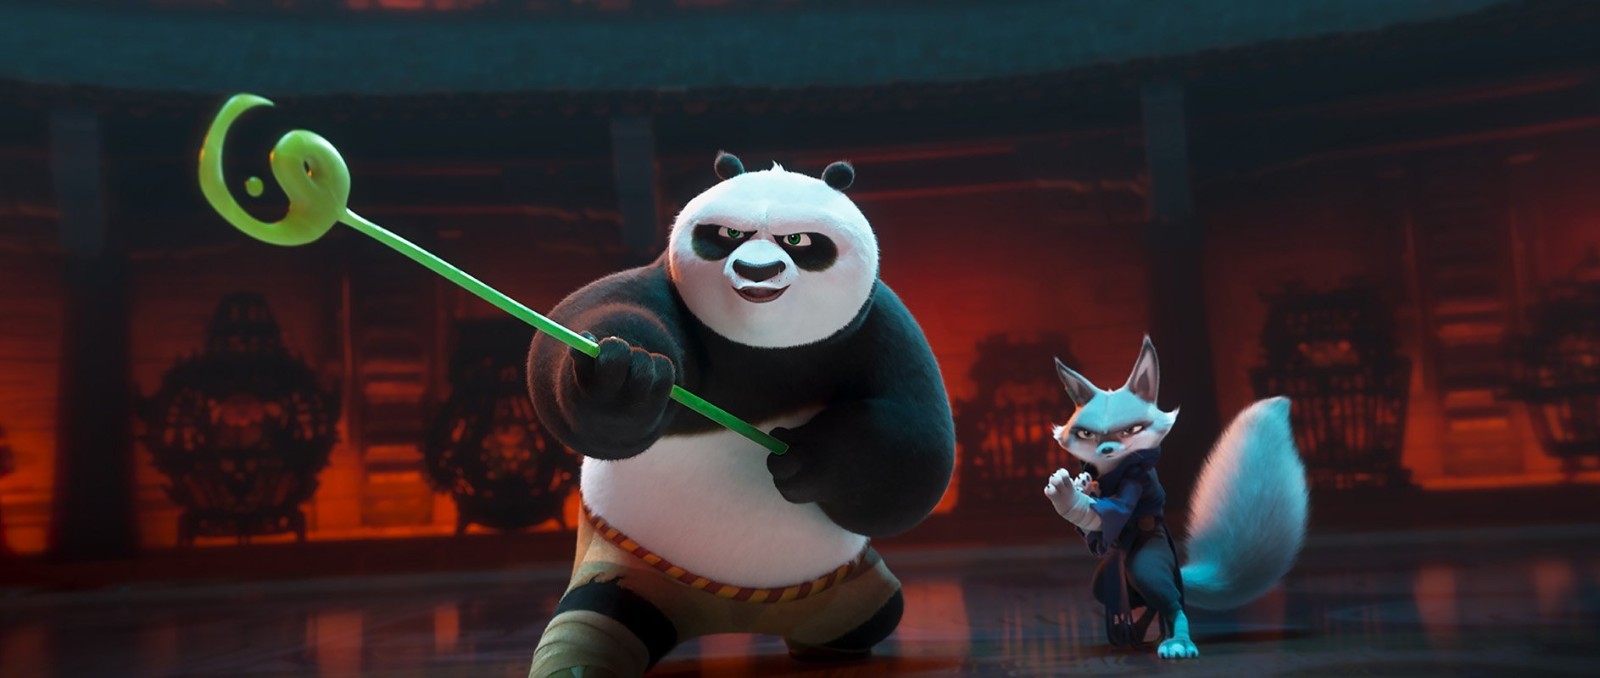 《功夫熊猫4》首个海报和首批剧照发布